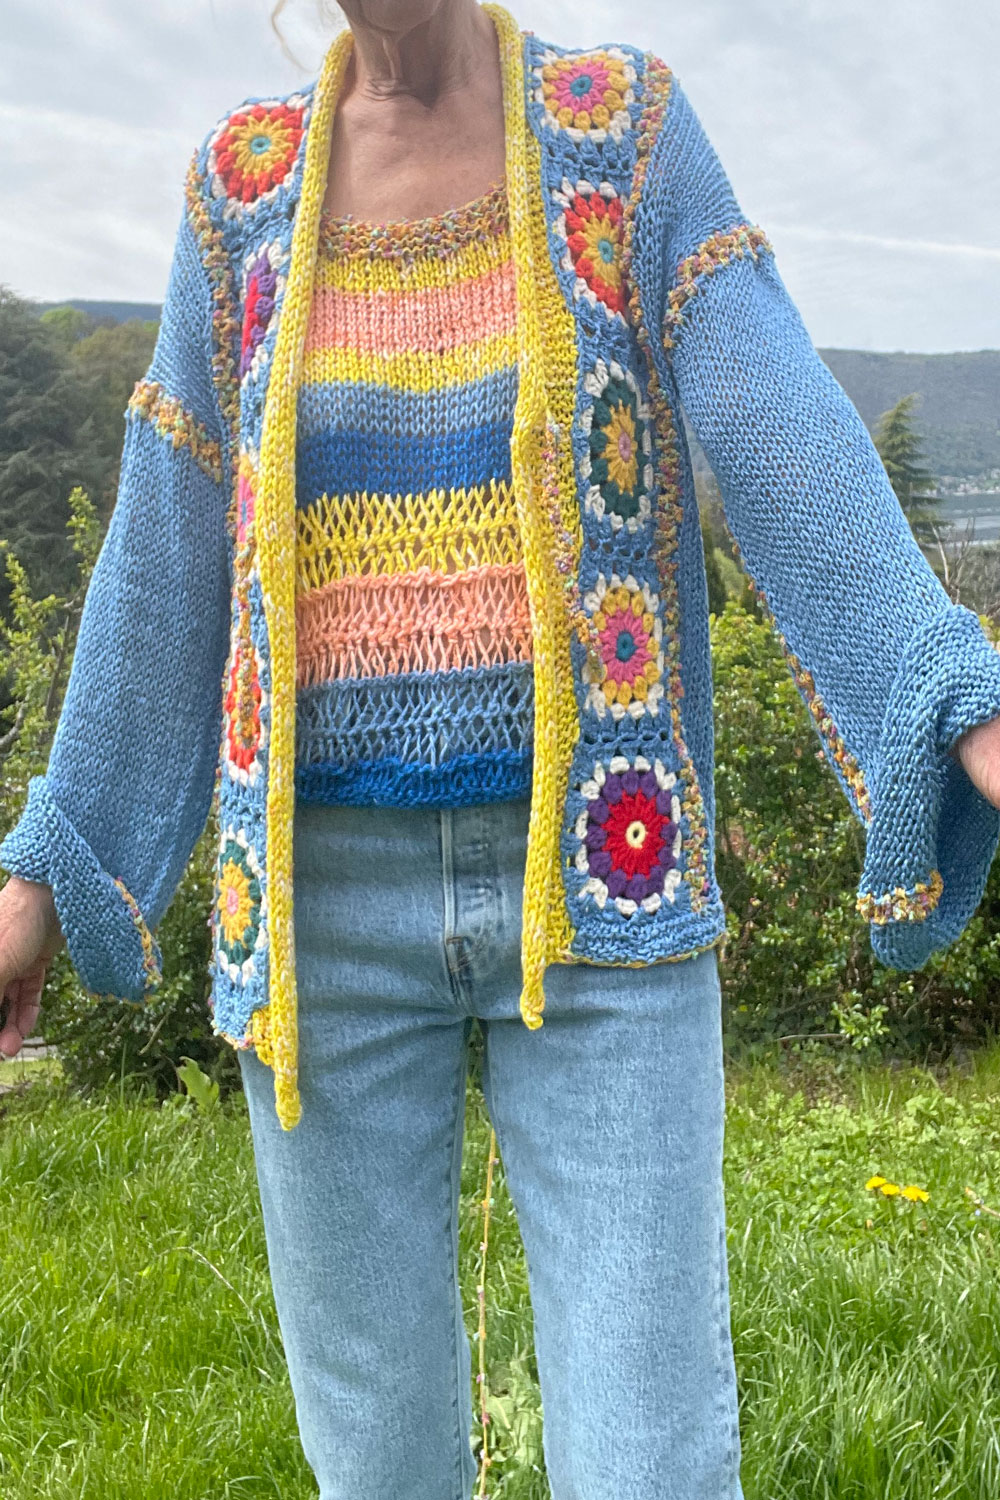 Gilet et top en crochet, tricot, fourche et granny - Site Tricot Art Crochet